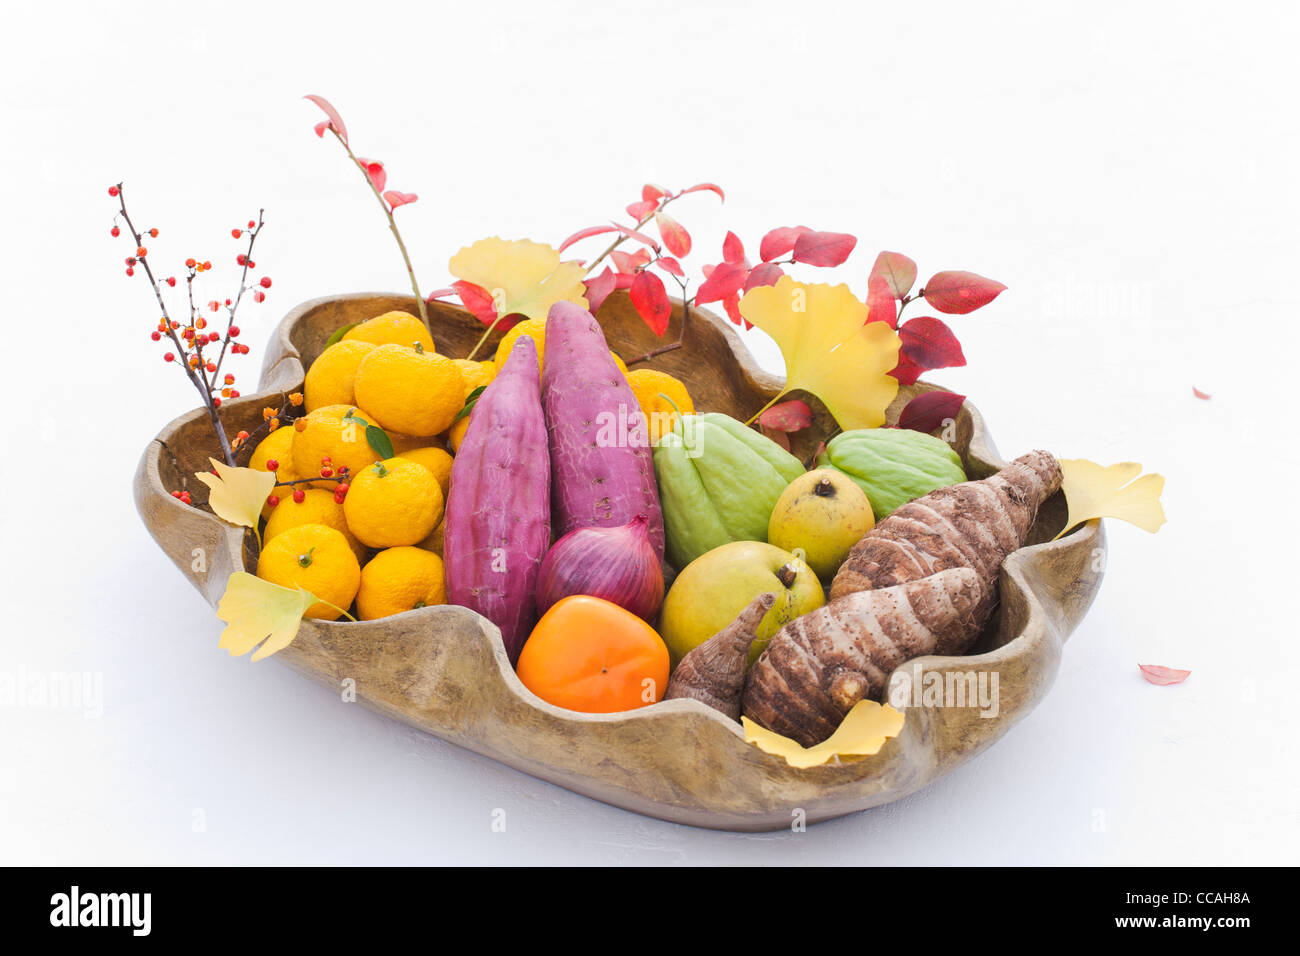 Les fruits, les légumes et les feuilles d'automne Banque D'Images